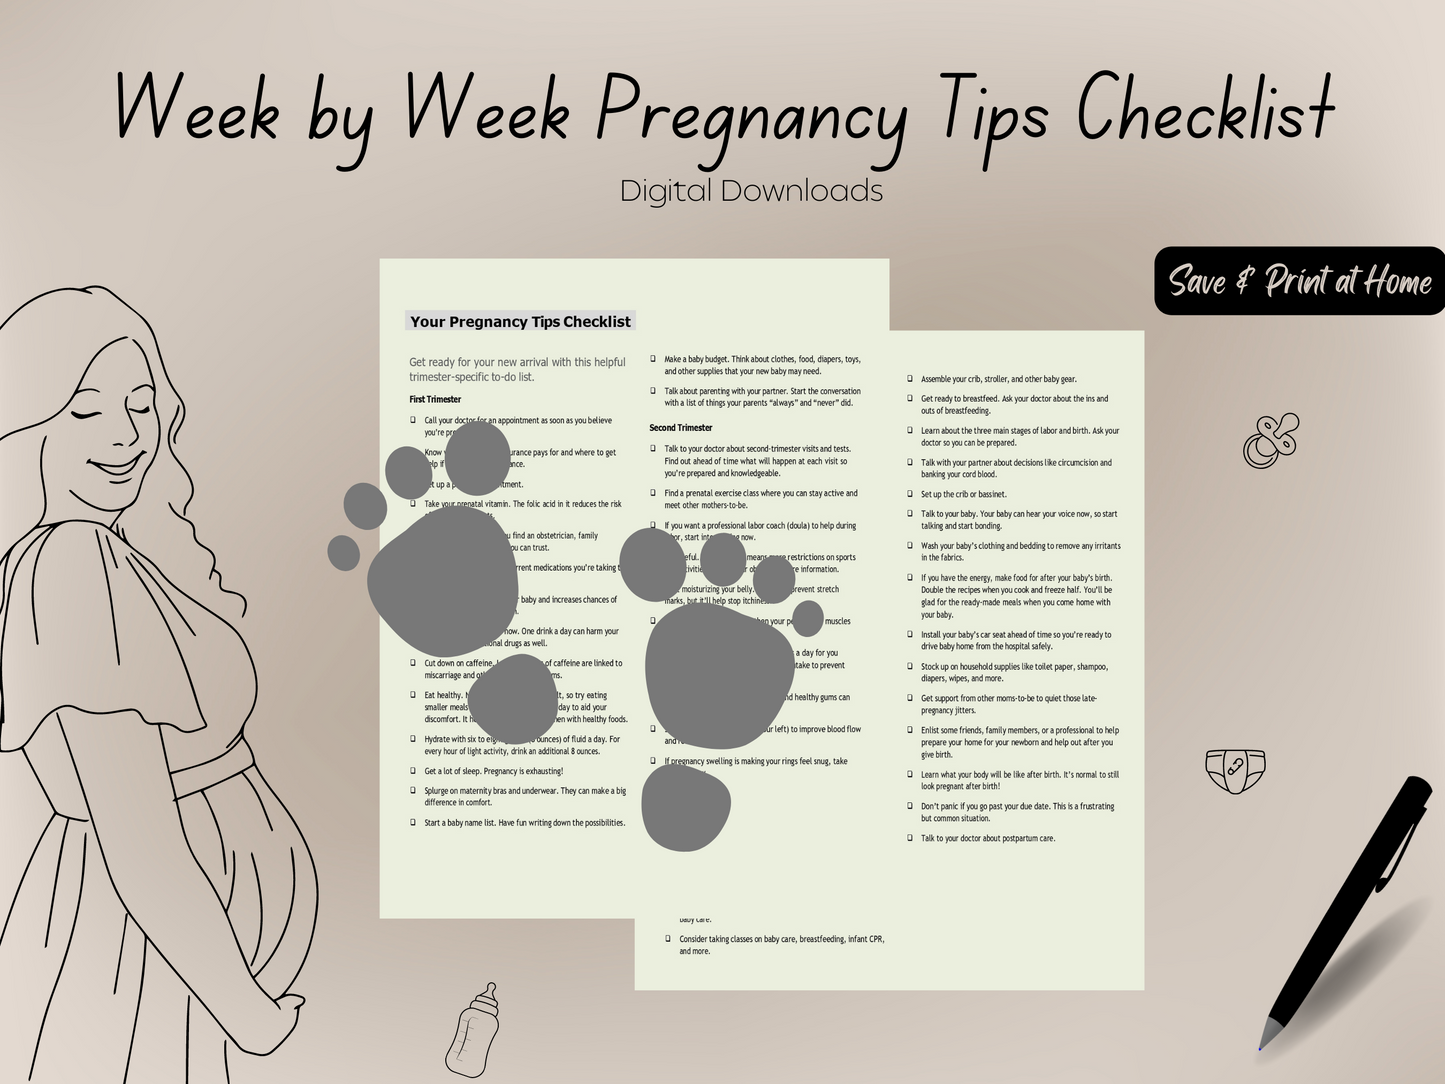 Week by Week Pregnancy Tips Checklist